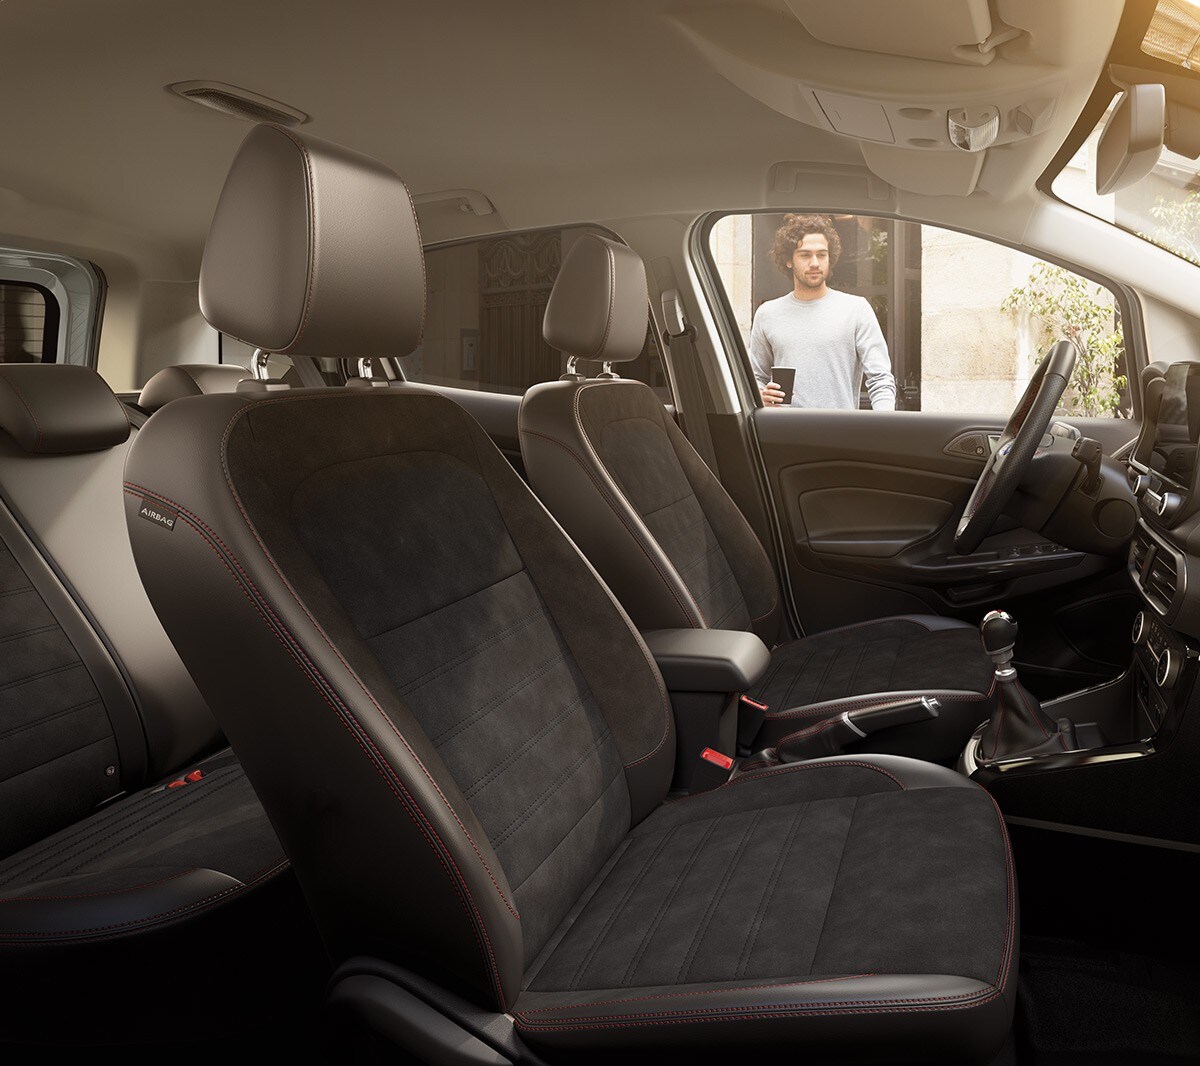 Ford EcoSport. Detailansicht Fahrer- und Beifahrersitz. Blick durch geöffnete Beifahrertür